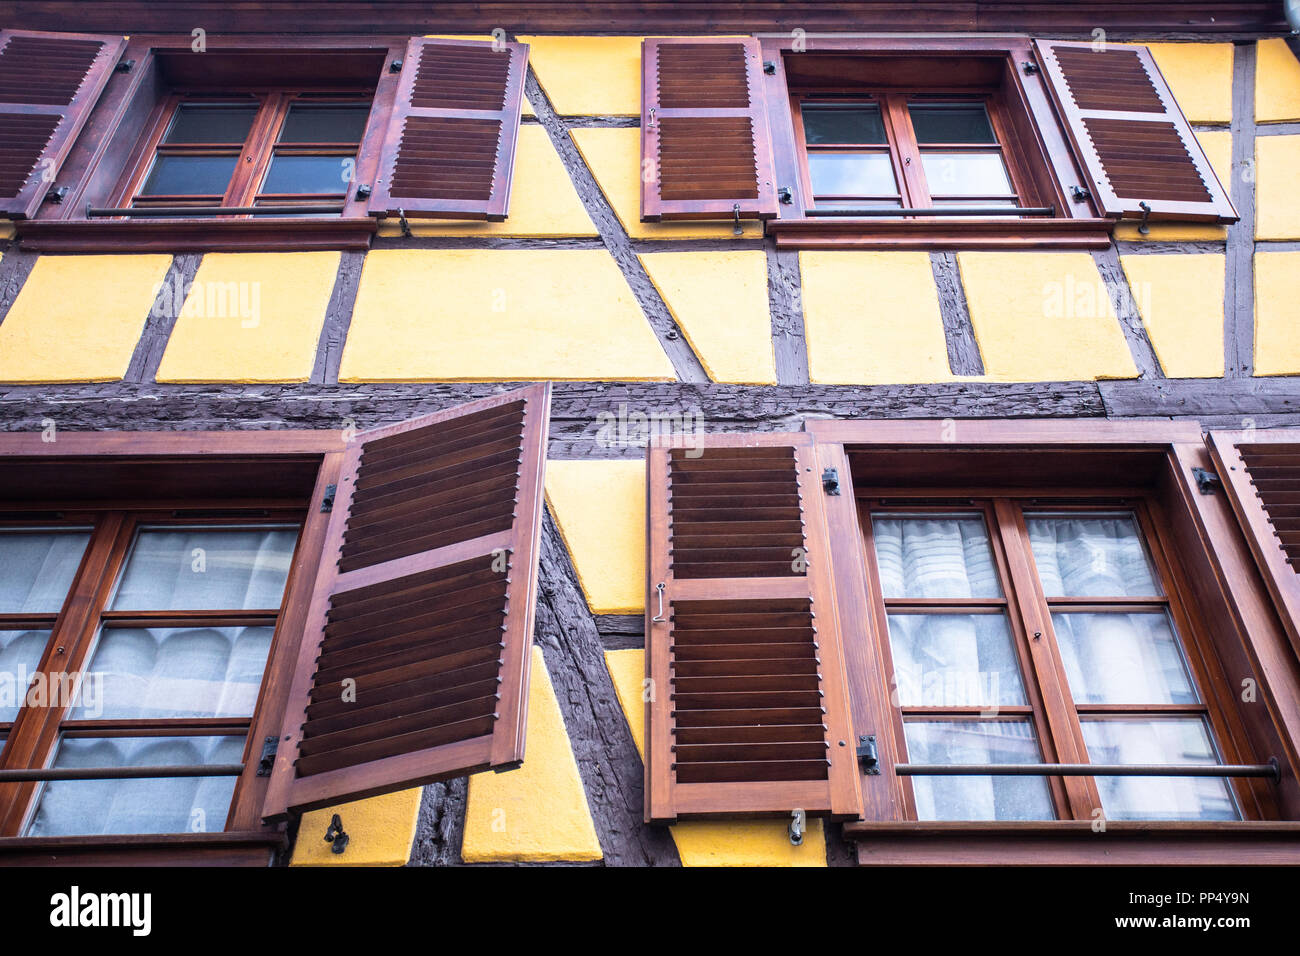 Plus de détails sur charmant bâtiment à colombages avec volets sur windows photographié à Strasbourg, France Banque D'Images